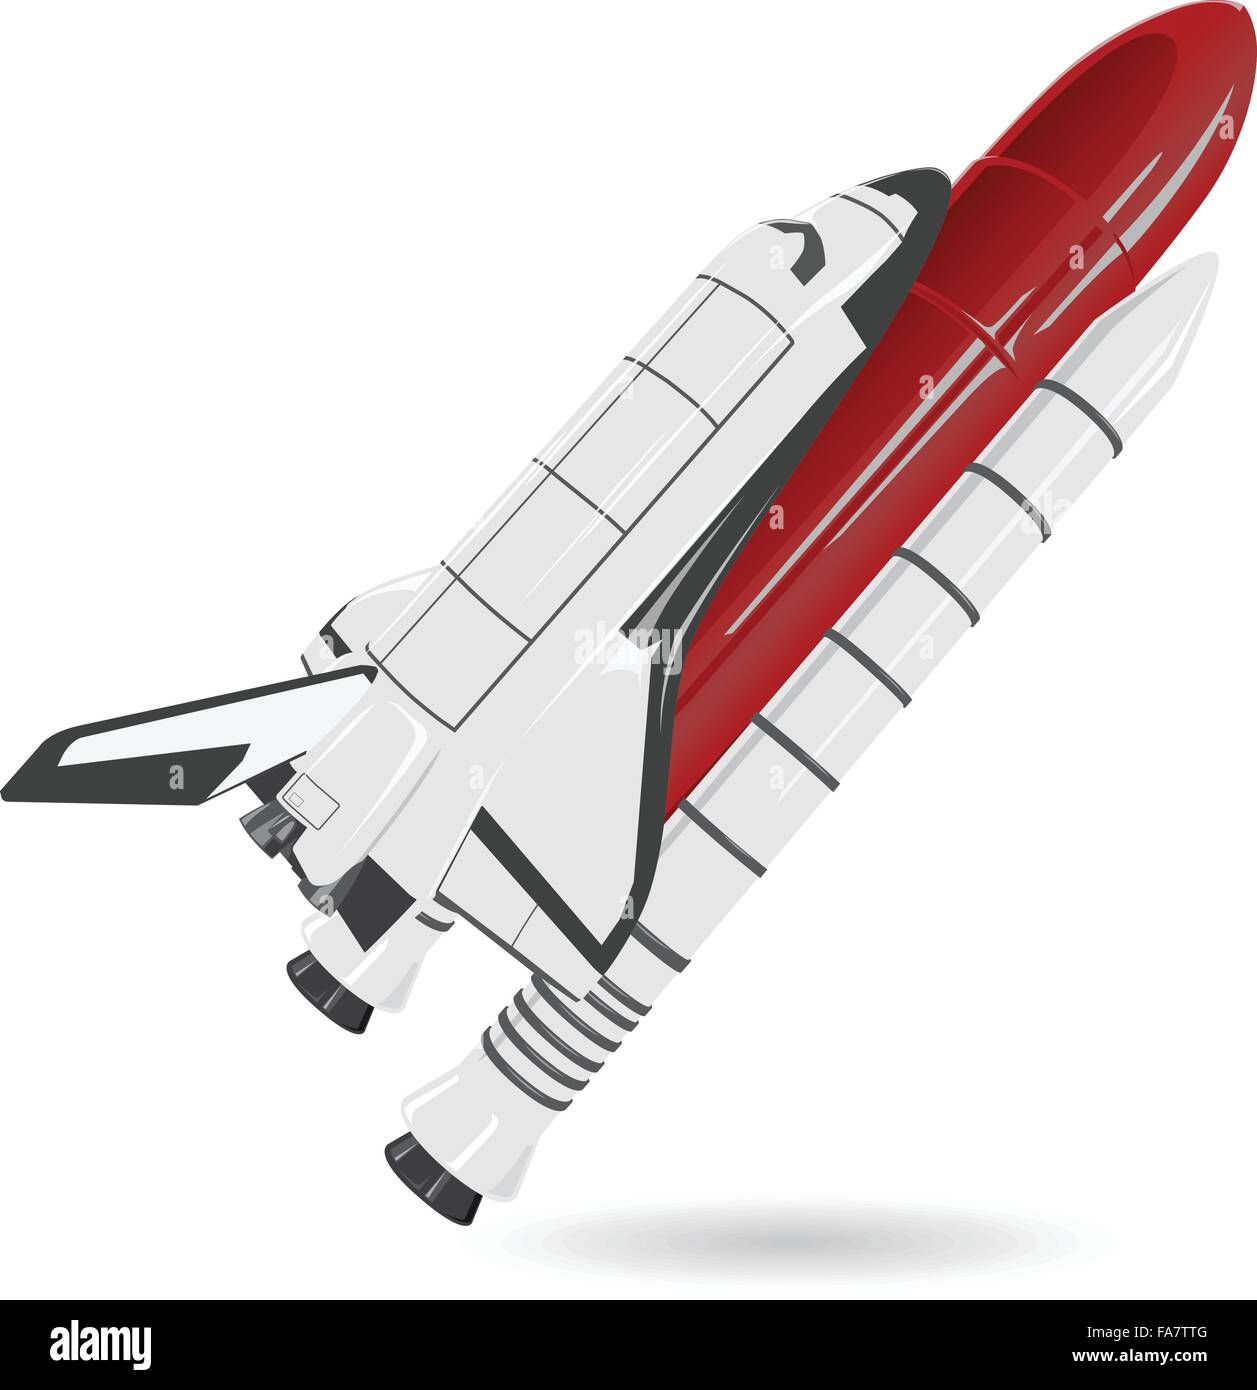 Weiße und rote schöne Raumfähre auf weiß - schöne flighting Raumschiff Kraftstofftank - glätten isolierte Abbildung Meister Vektor Stock Vektor